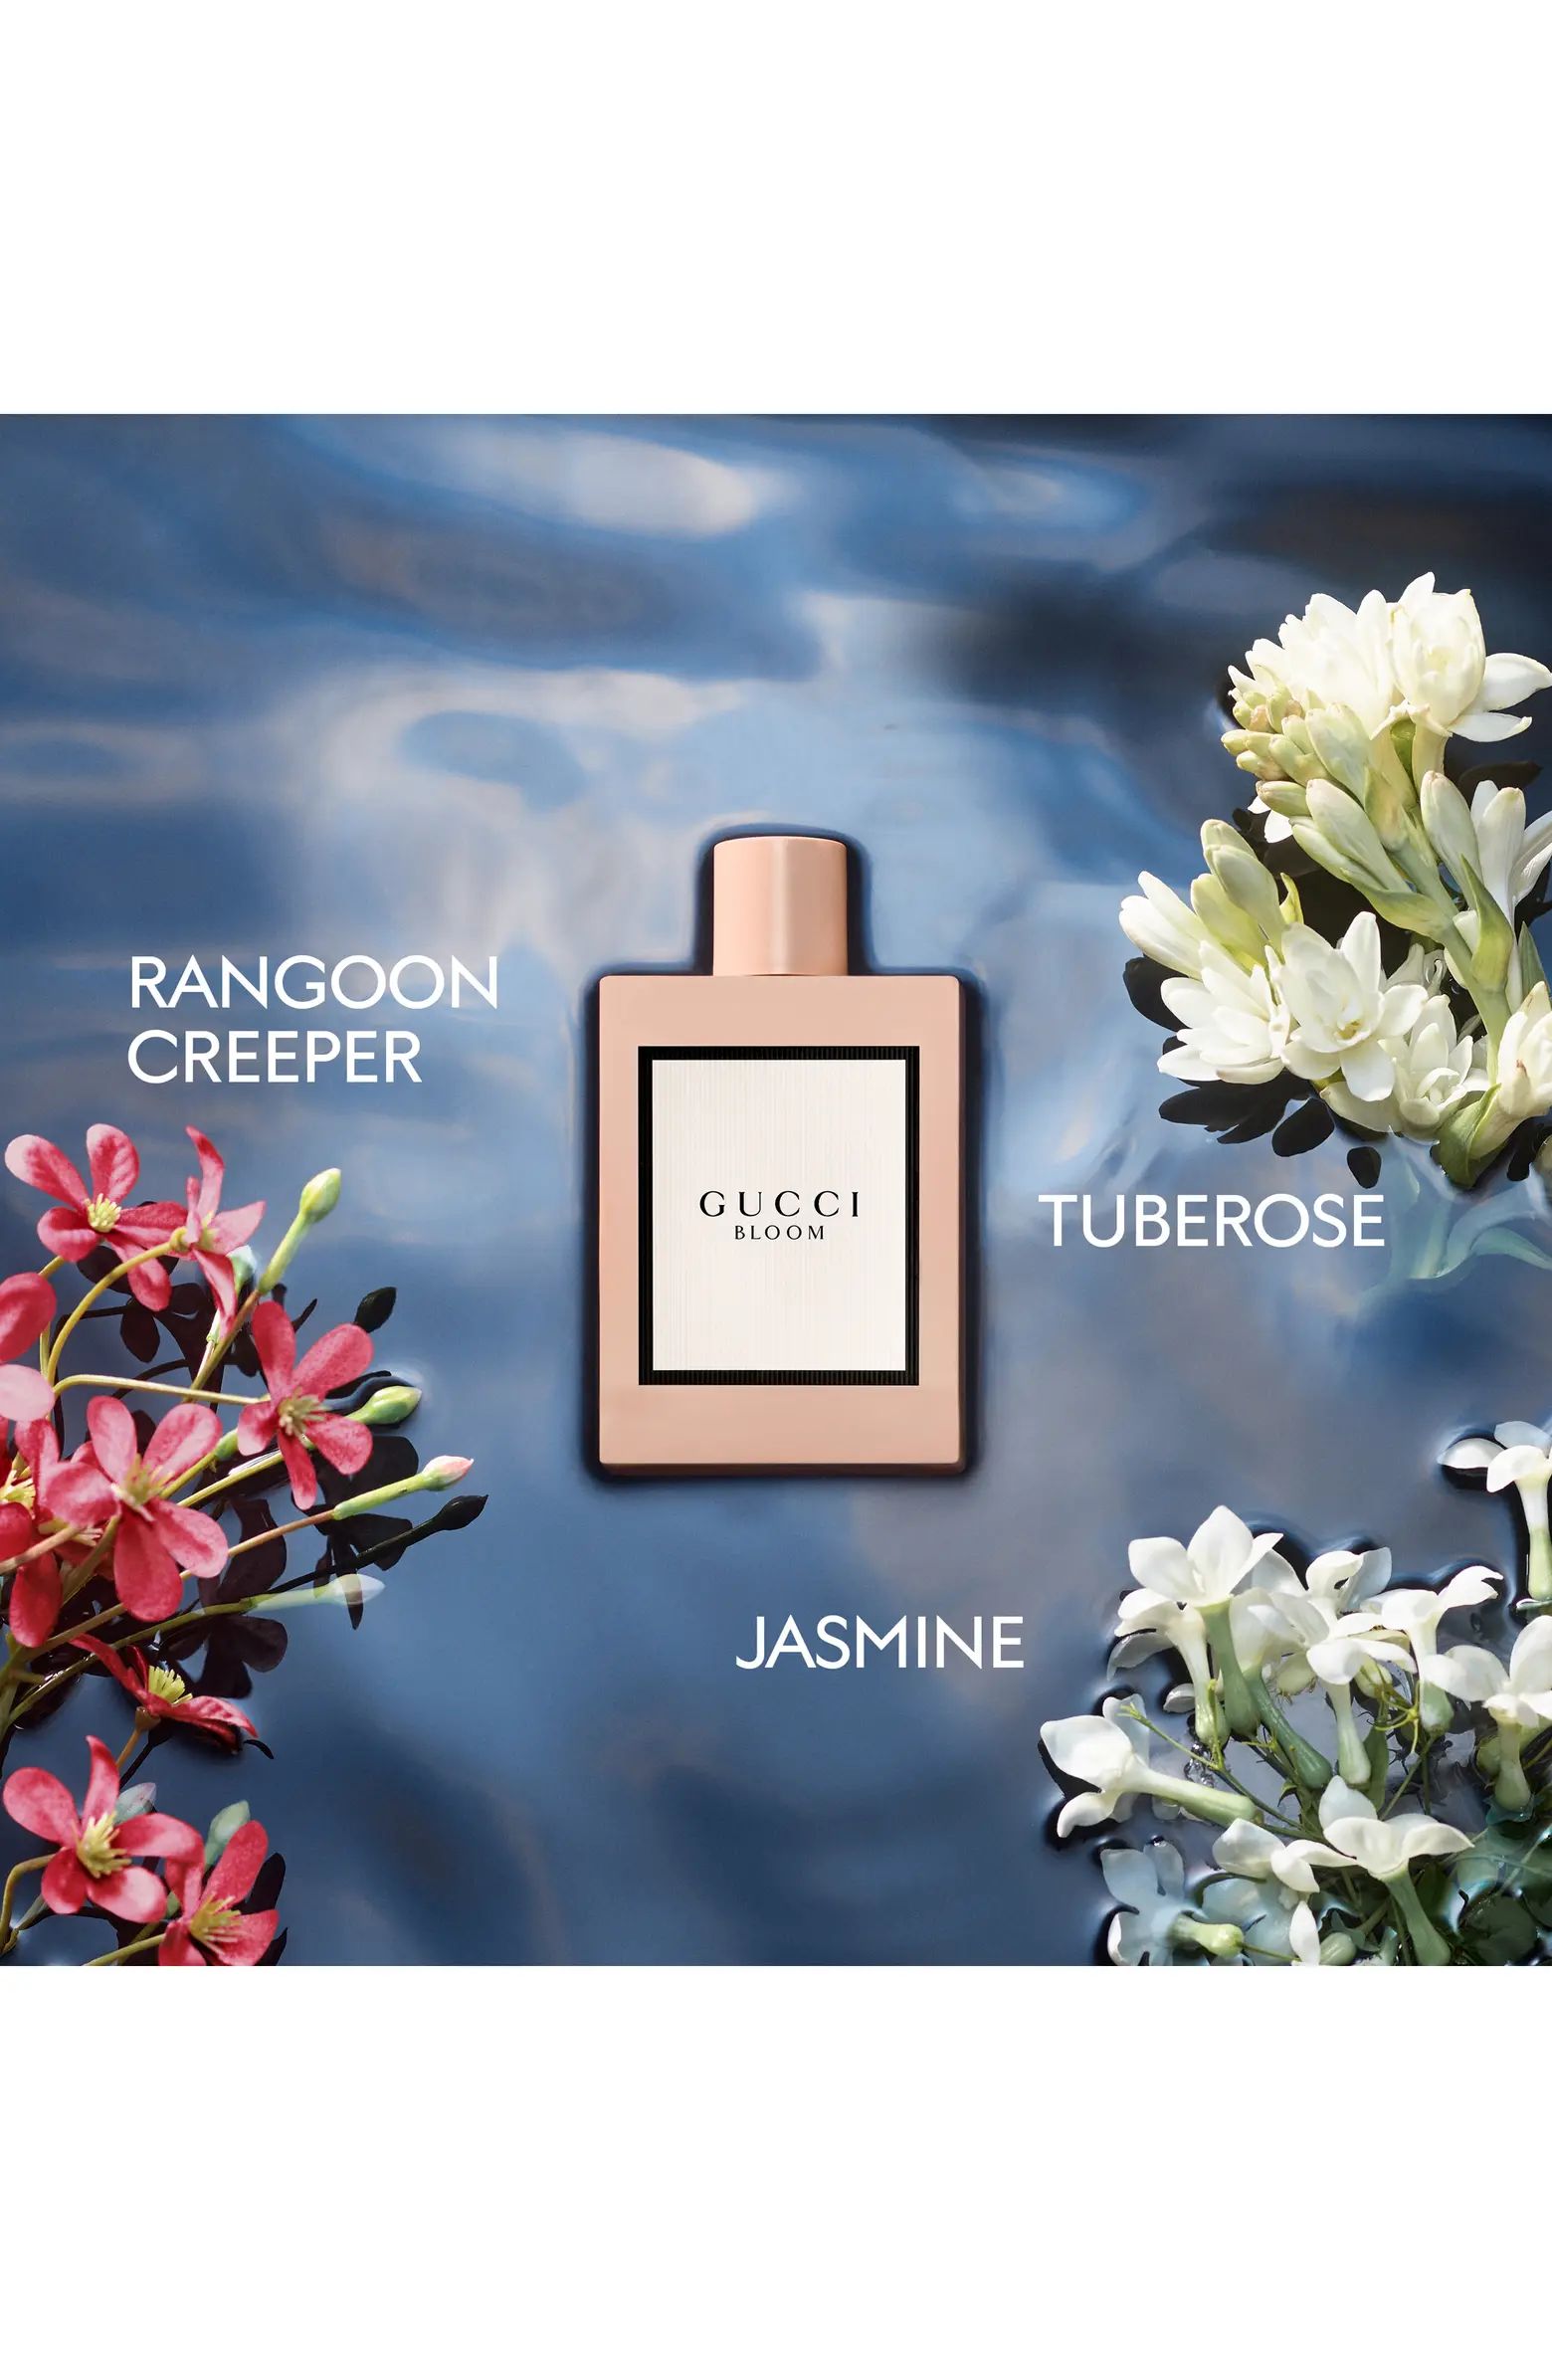 Bloom Eau de Parfum Set $152 Value | Nordstrom